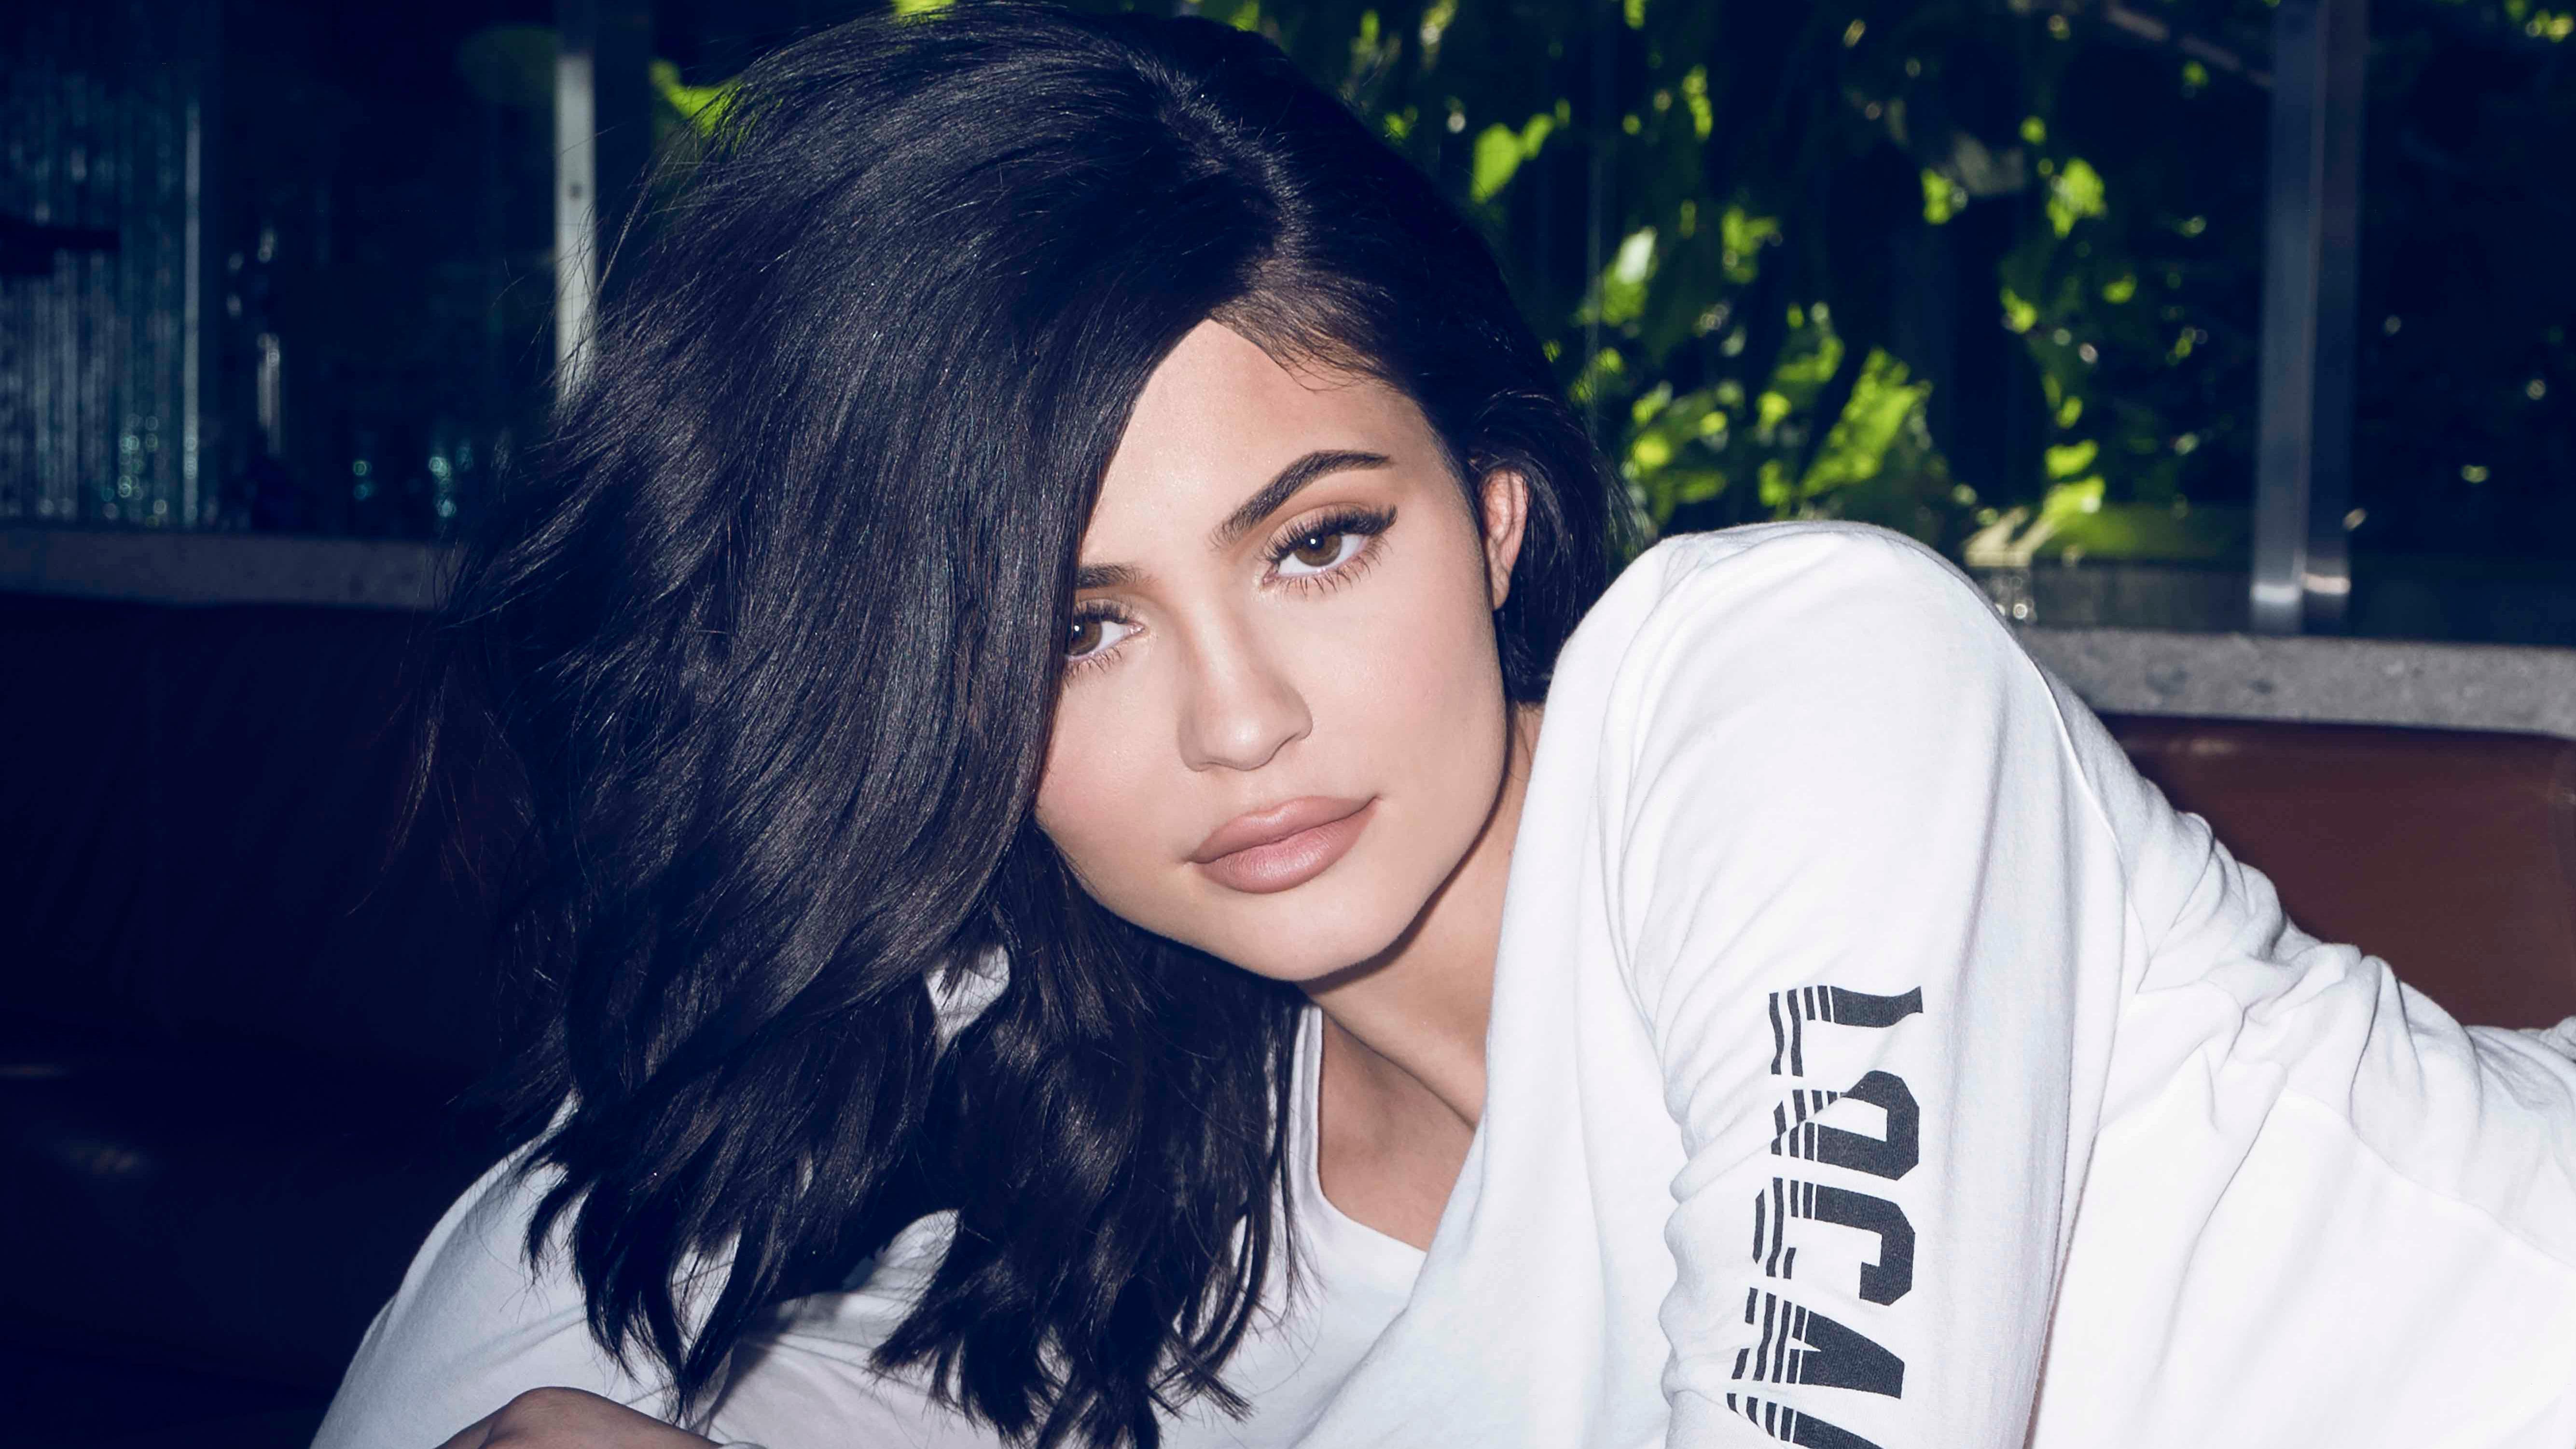 Kylie Jenner 2019 5K, HD Celebrities, 4k Wallpaper, Image